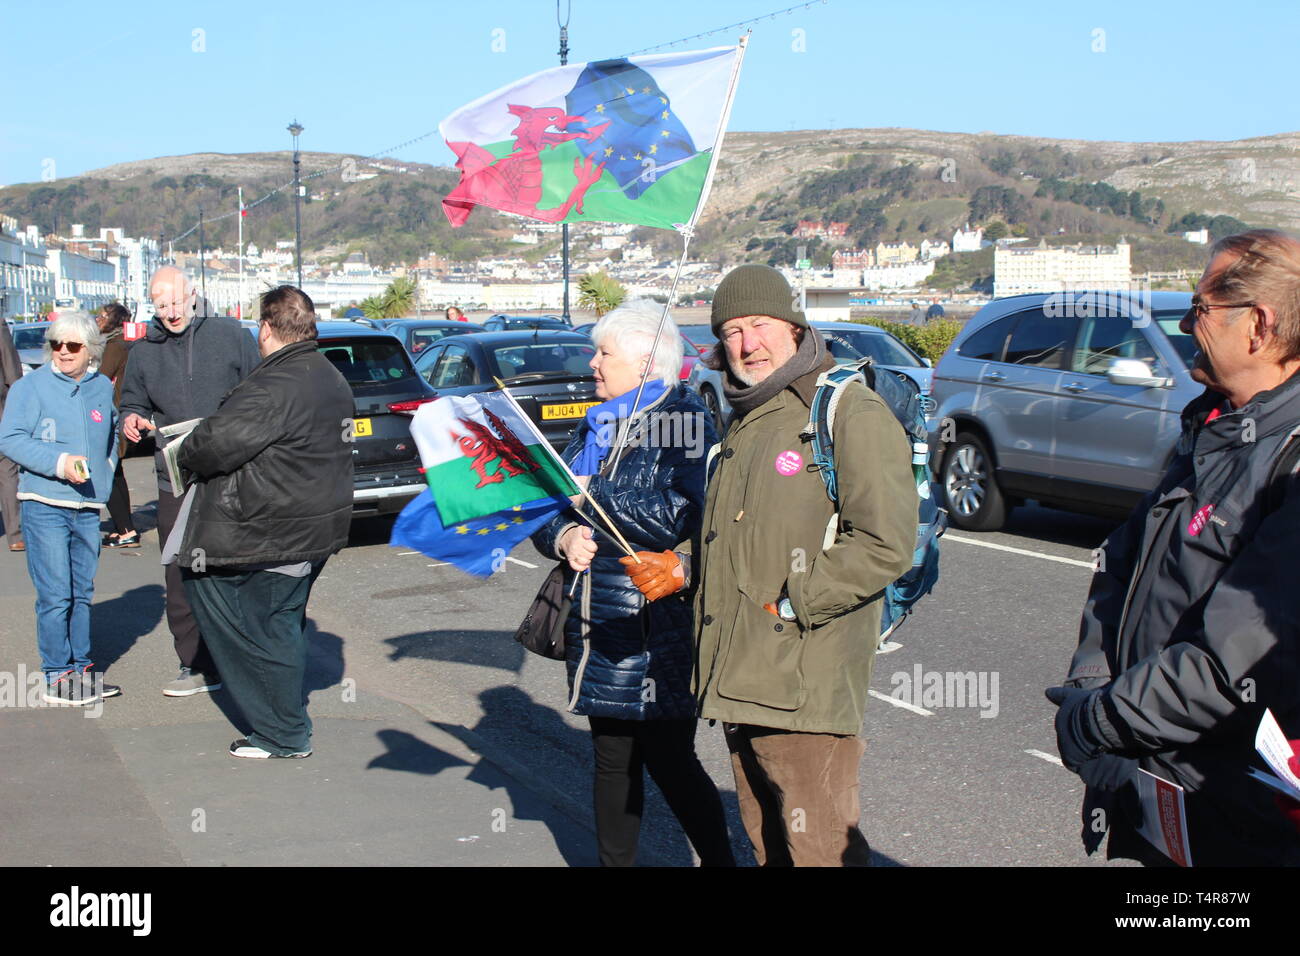 Le proteste al di fuori del Welsh labour party conference in Llandudno Galles Foto Stock